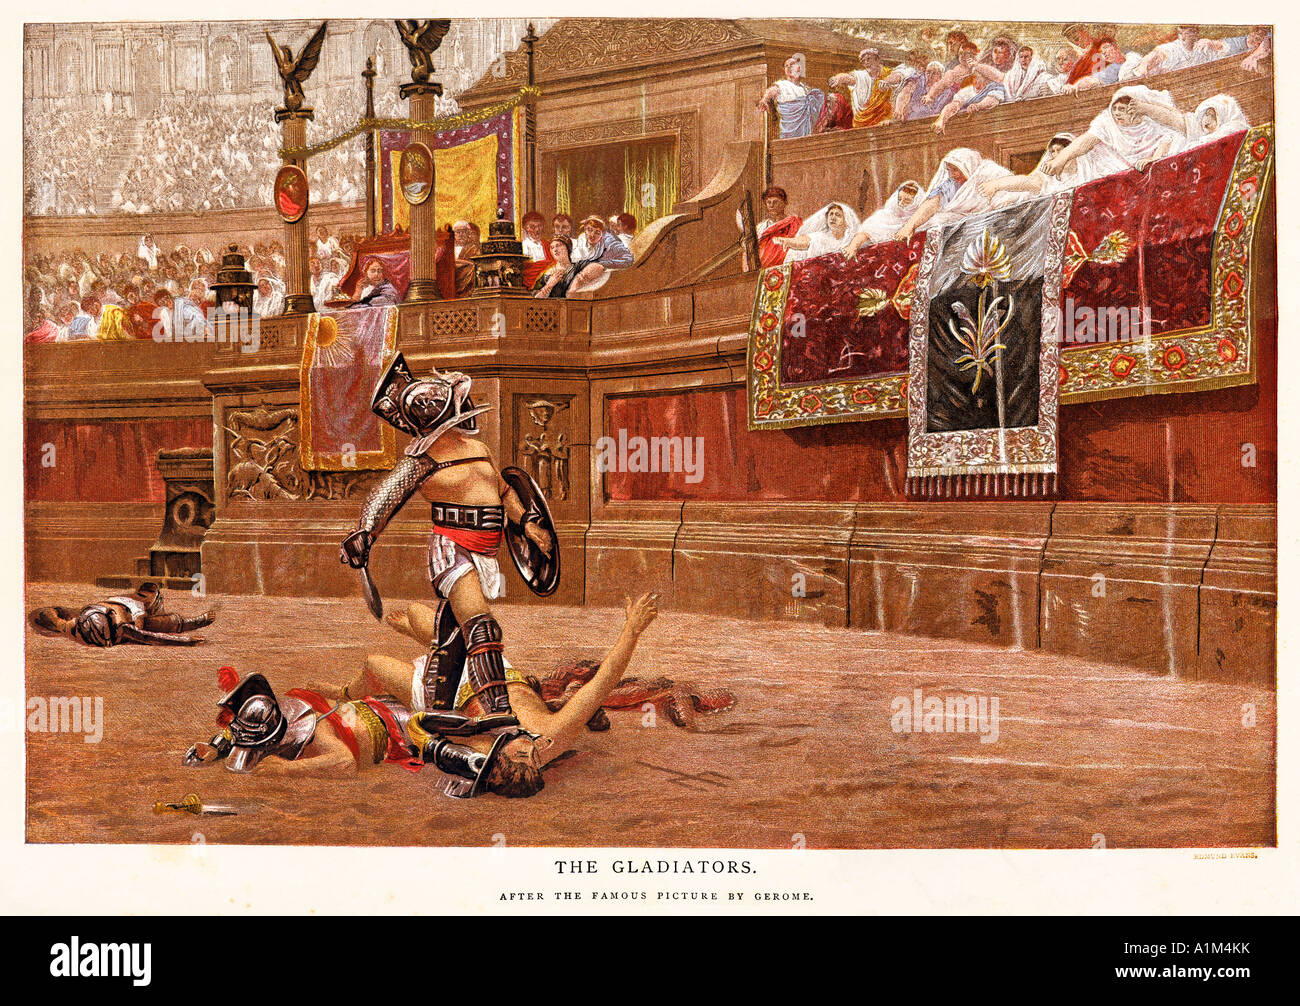 La gravure de l'époque victorienne gladiateurs 1872 peinture de Jean Leon Gerome de pouce vers le bas dans les jeux romains Banque D'Images